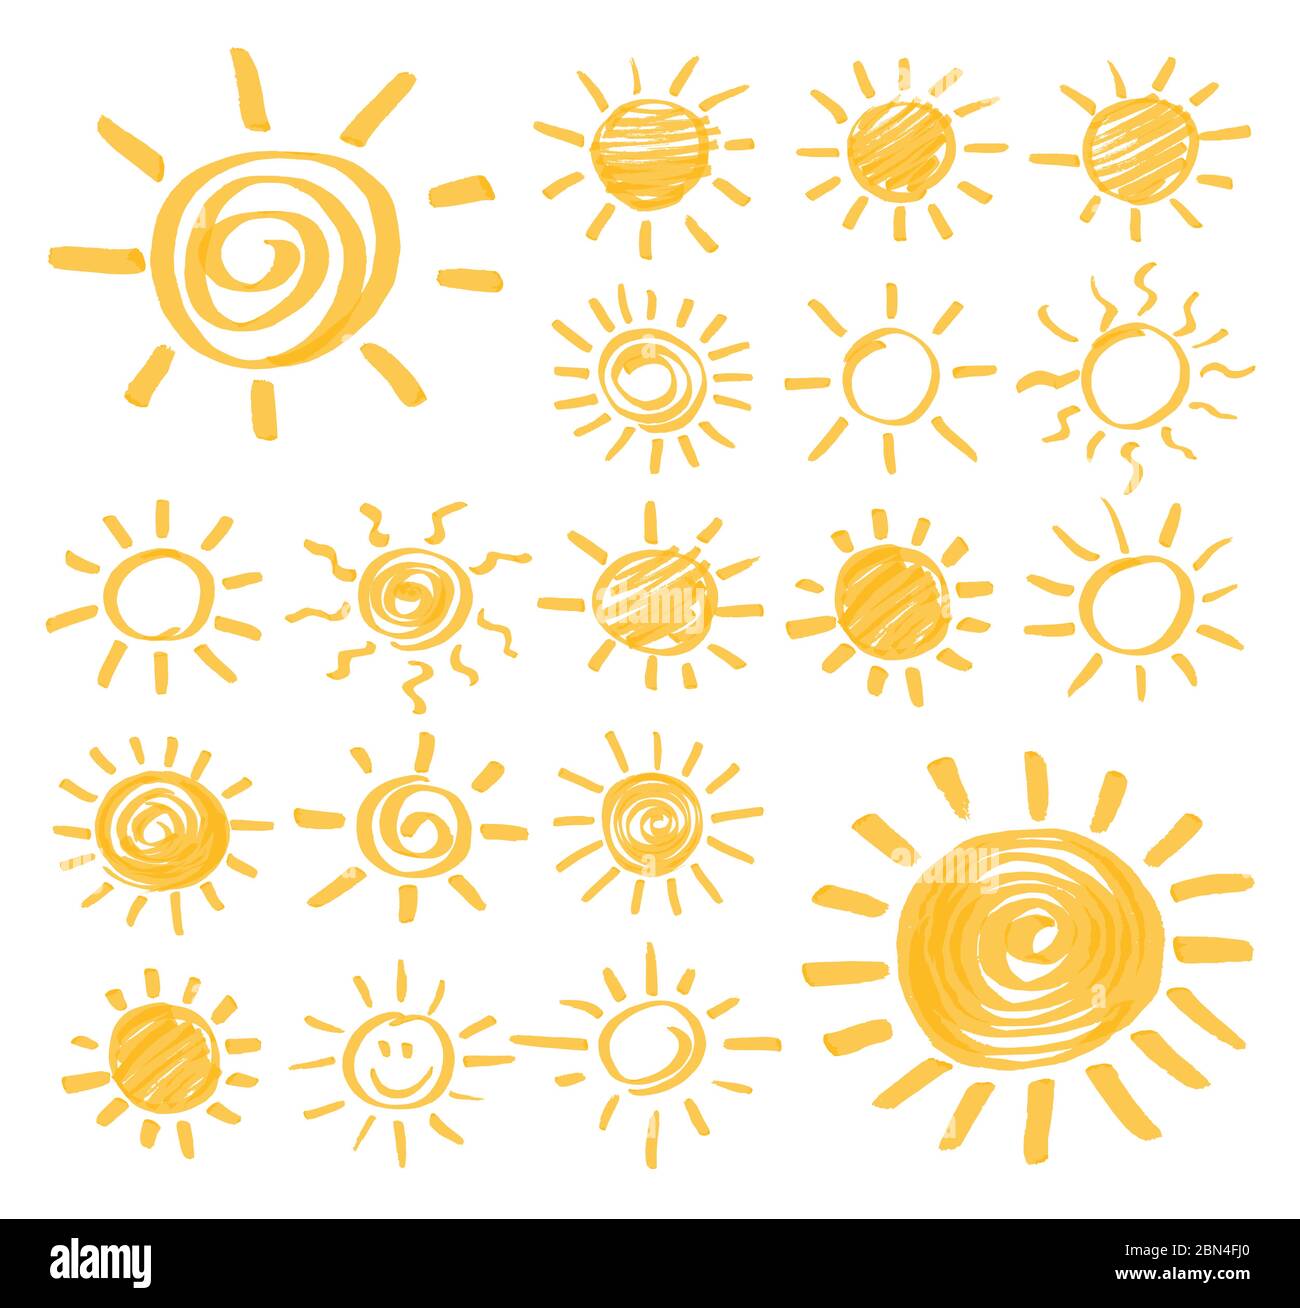 Markiertere Marker Sommer Sonne Design-Elemente. Satz von Vektor-Sonne-Symbole von Hand gezeichnet von gelben Textmarker. Optimiert für Farbänderungen mit einem Klick. Sehr Stock Vektor